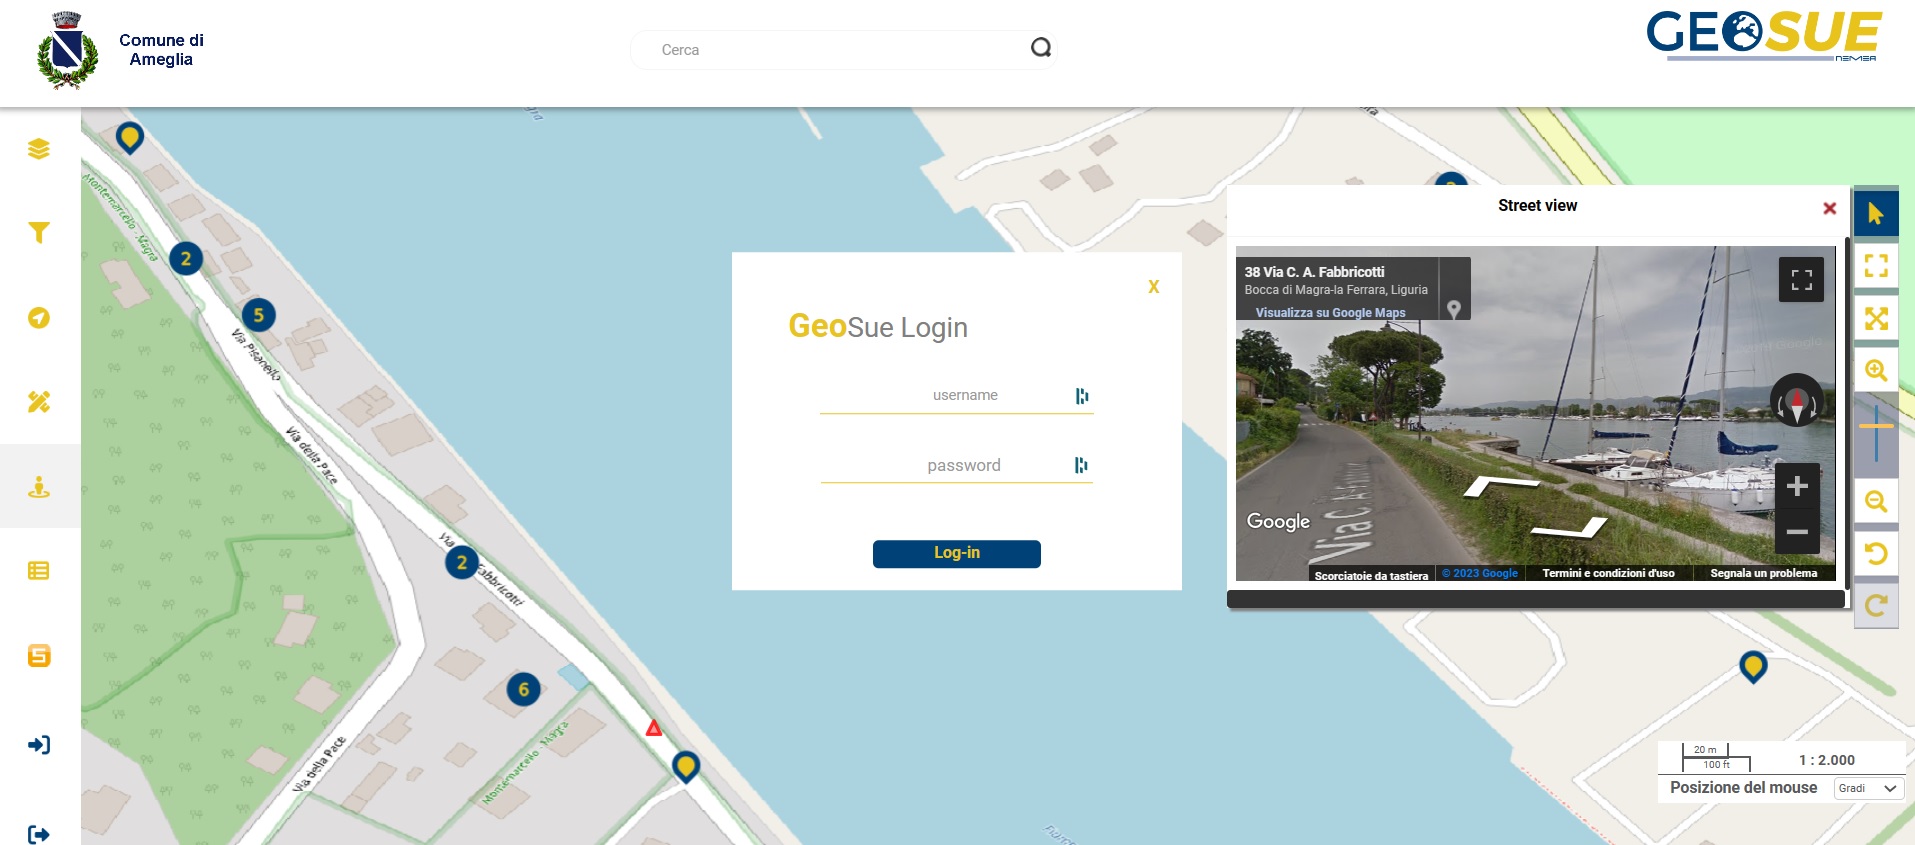 GeoSUE - schermata login + street view - Nemea Sistemi